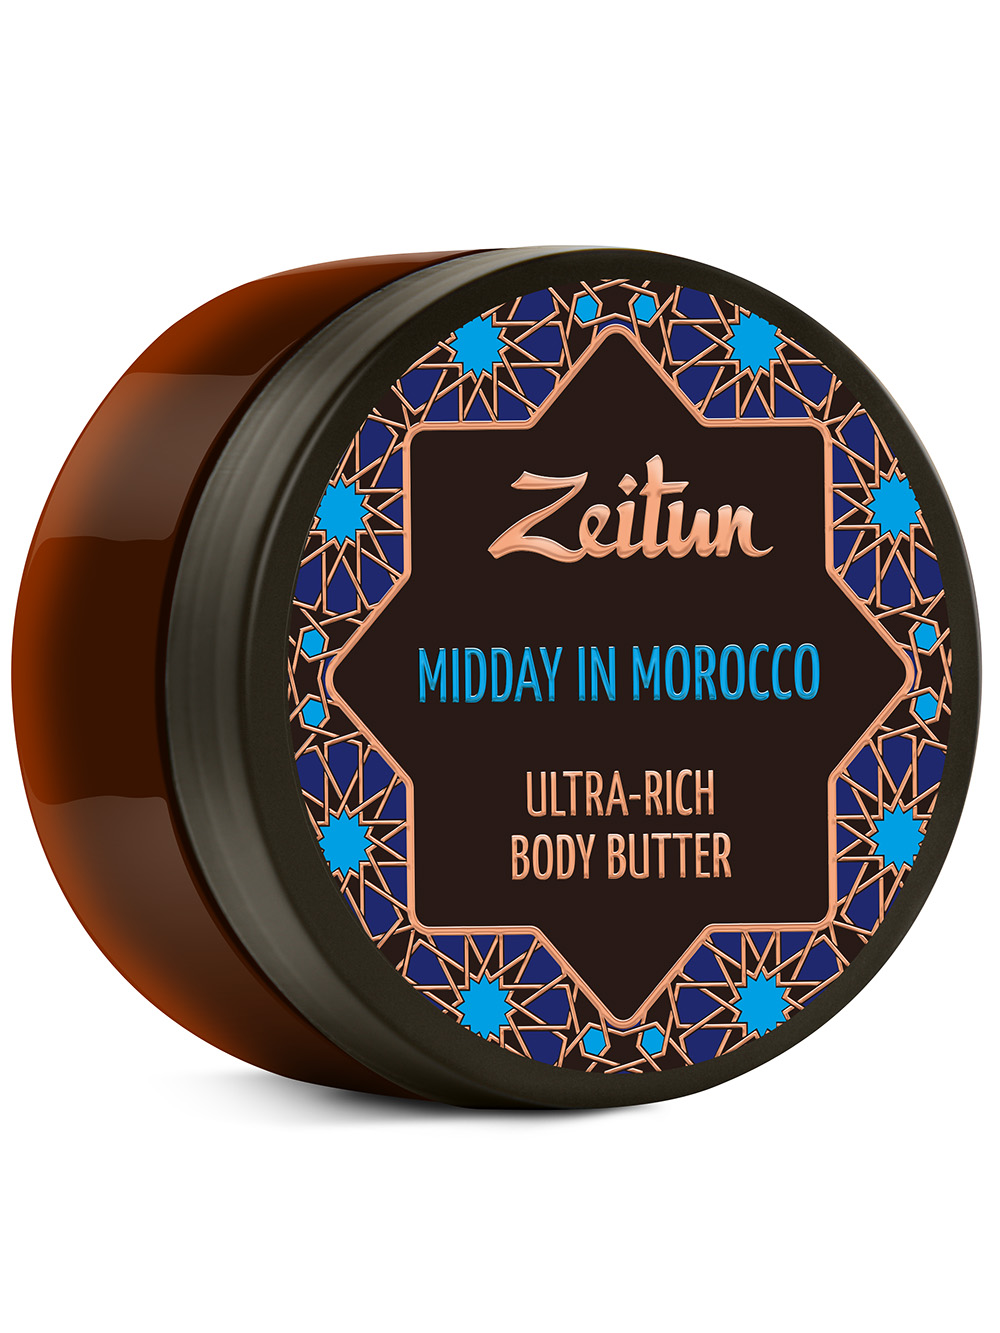 Крем-масло для тела "Марокканский полдень". С лифтинг-эффектом.